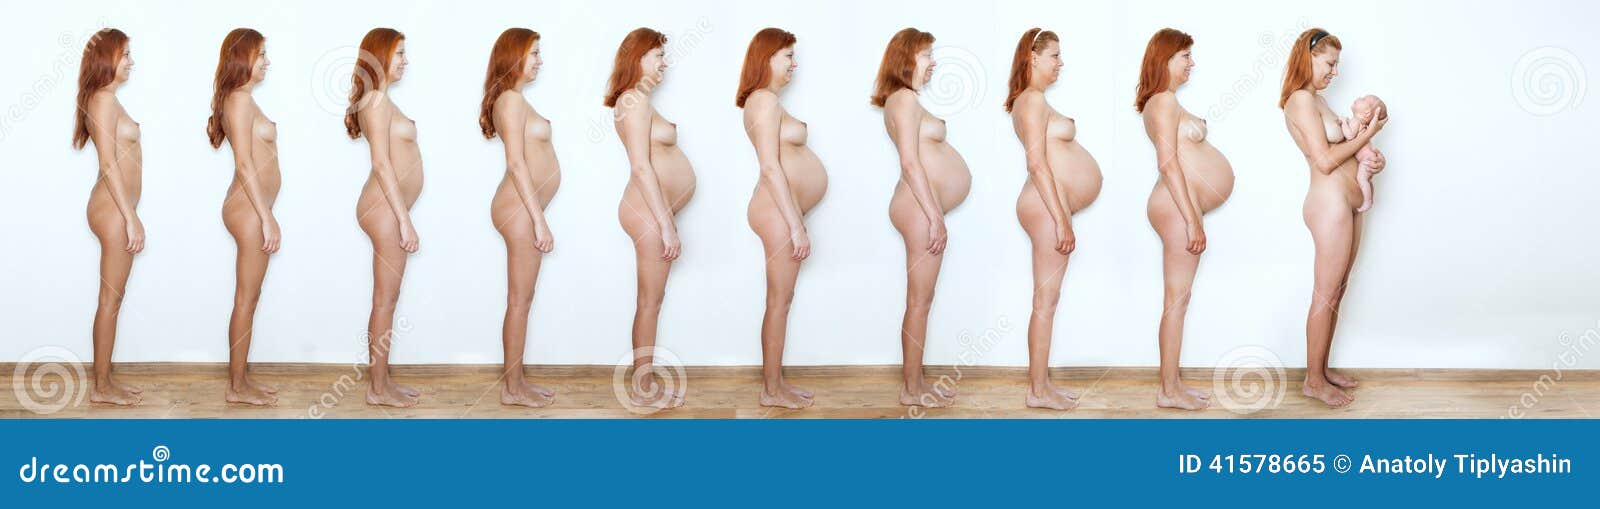 голые беременные на девятом месяце фото 25